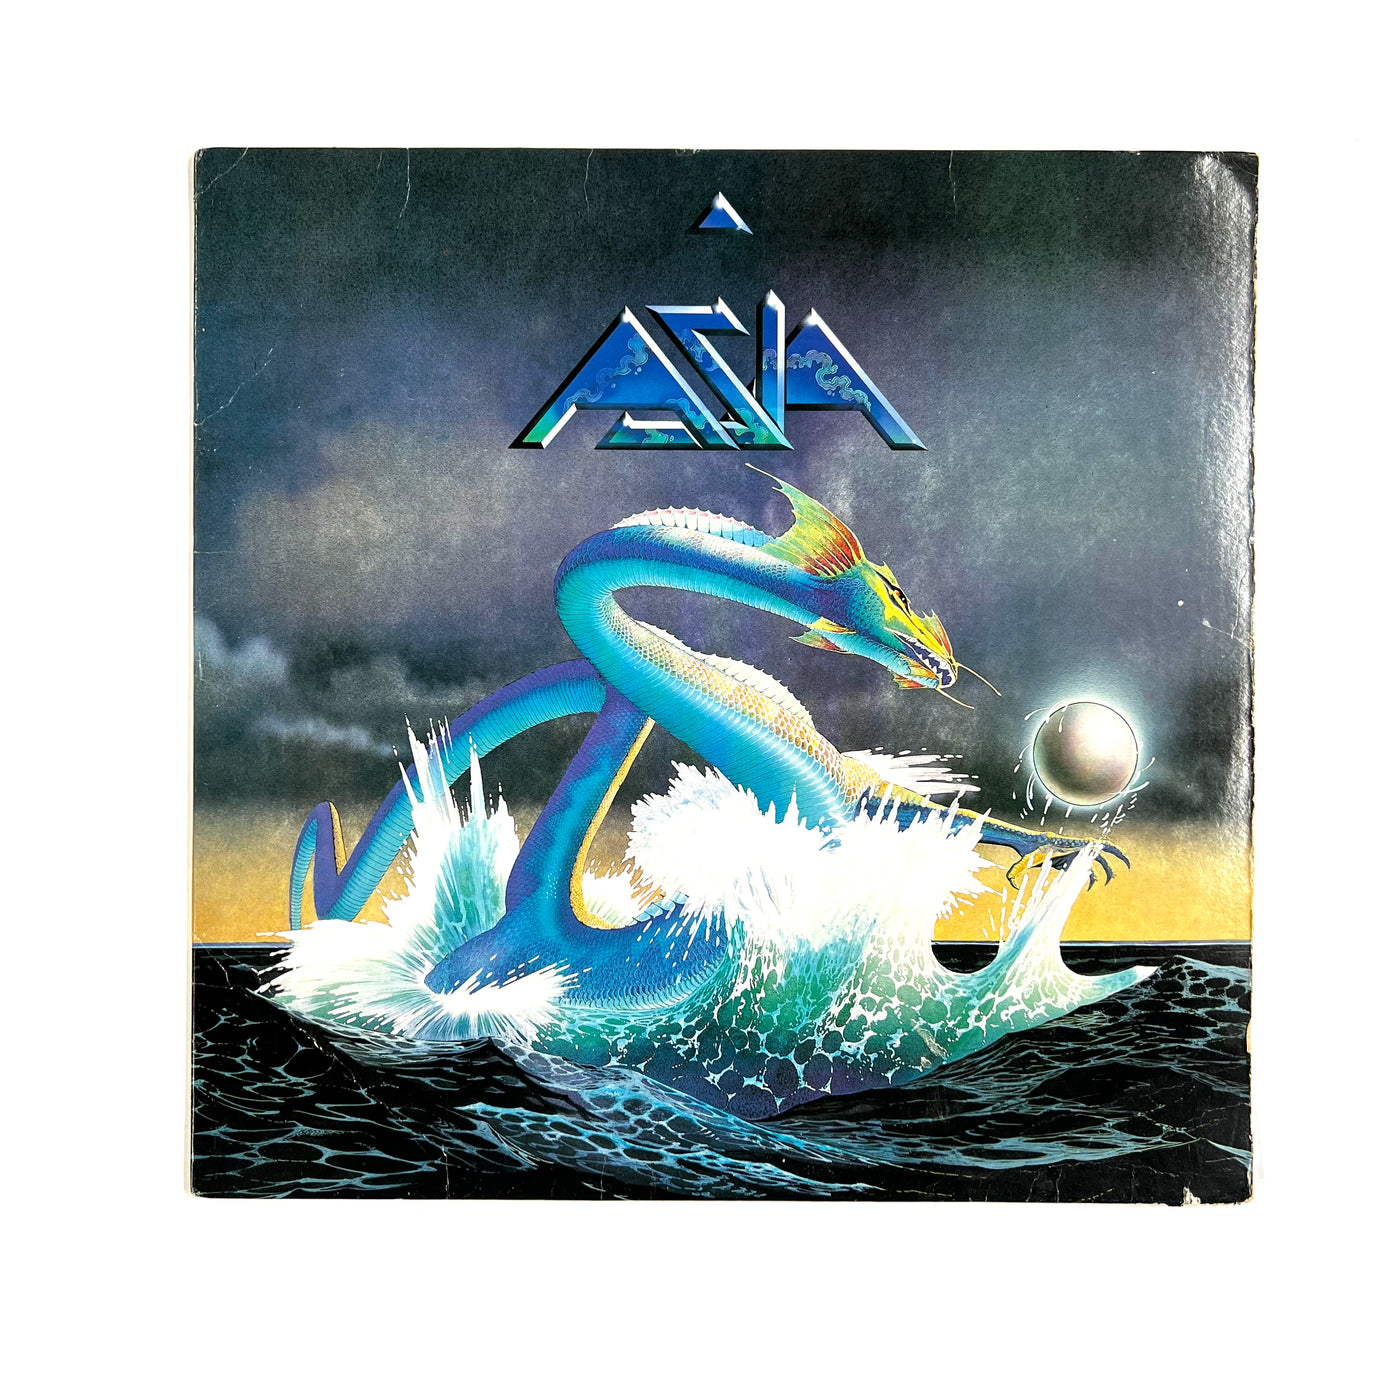 Asia – Asia (1982, Vinyl)